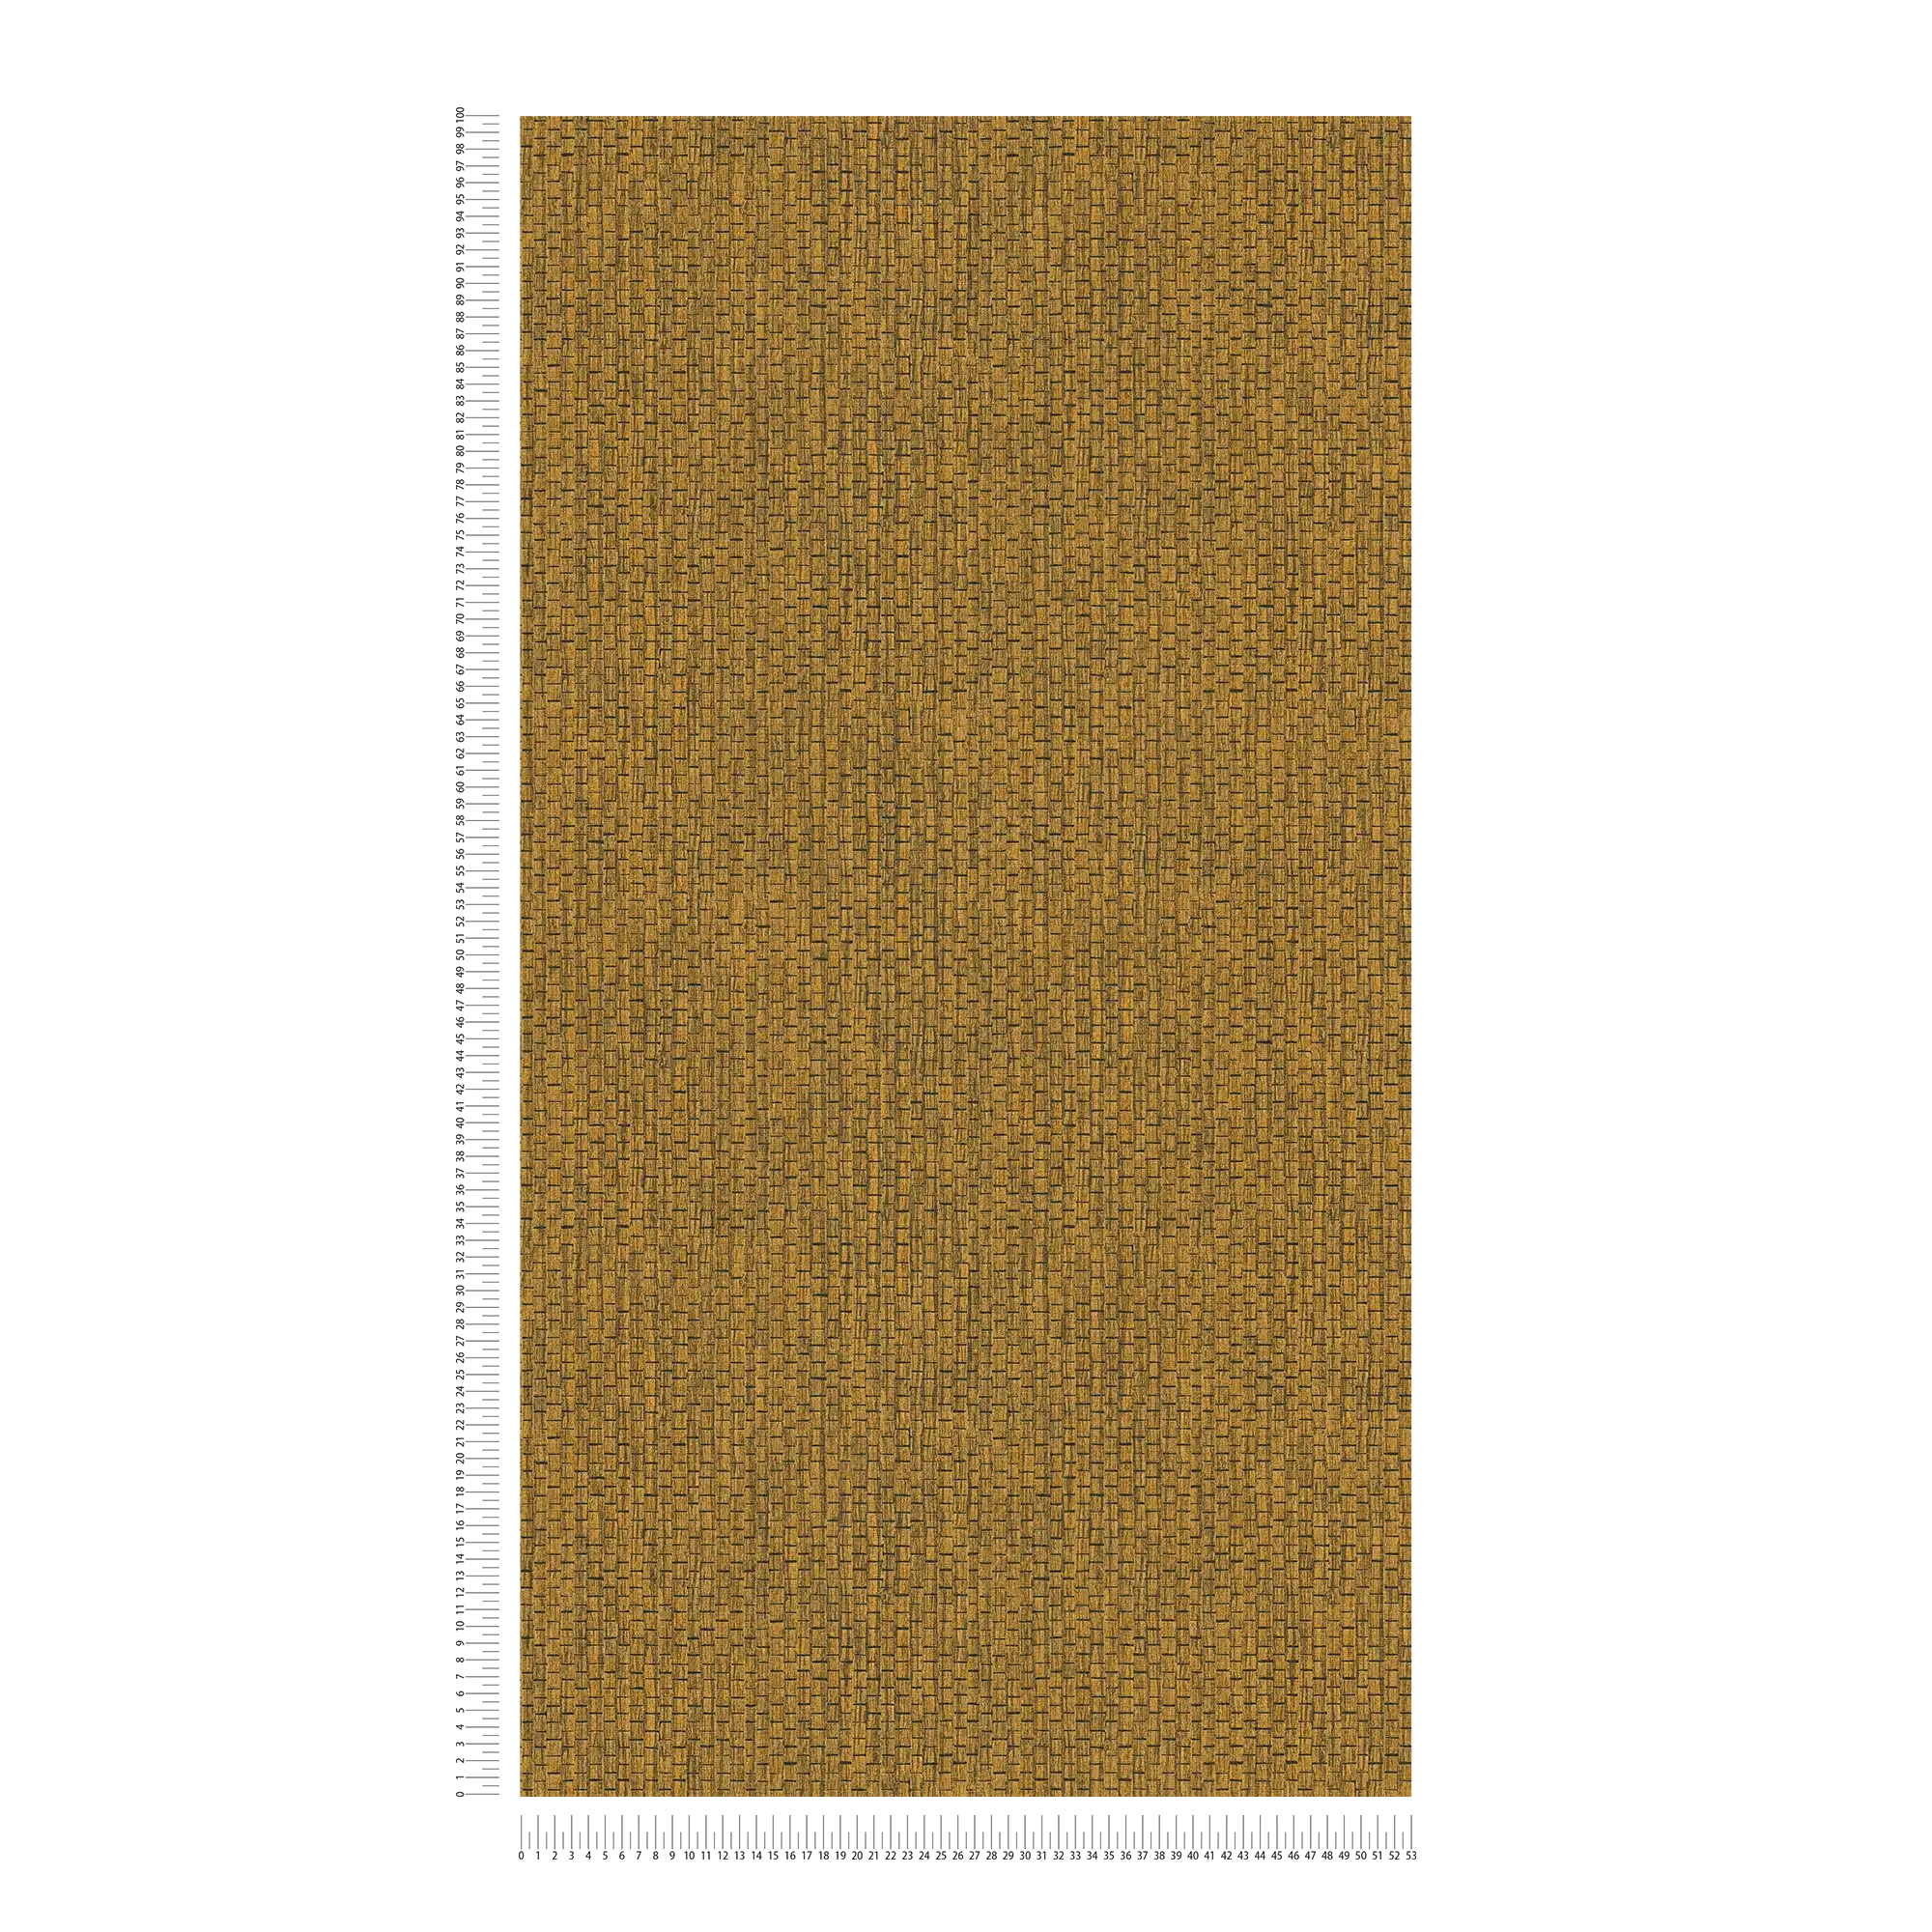             Papel pintado con diseño de alfombra de rafia - Marrón, Amarillo
        